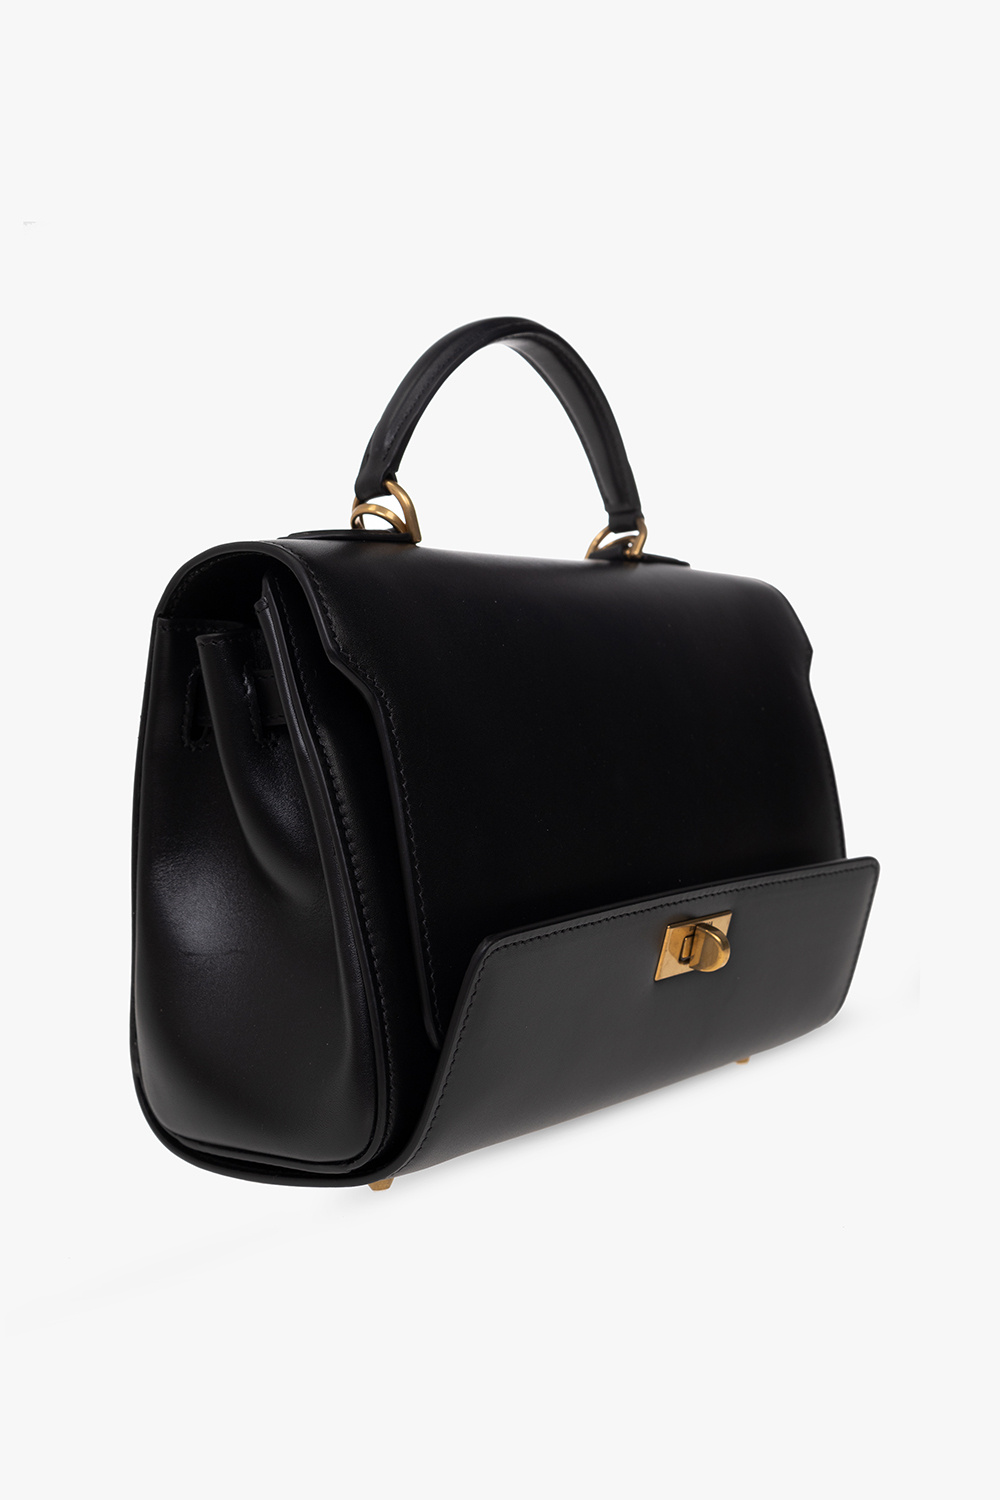 Balenciaga ‘Money Small’ shoulder bag